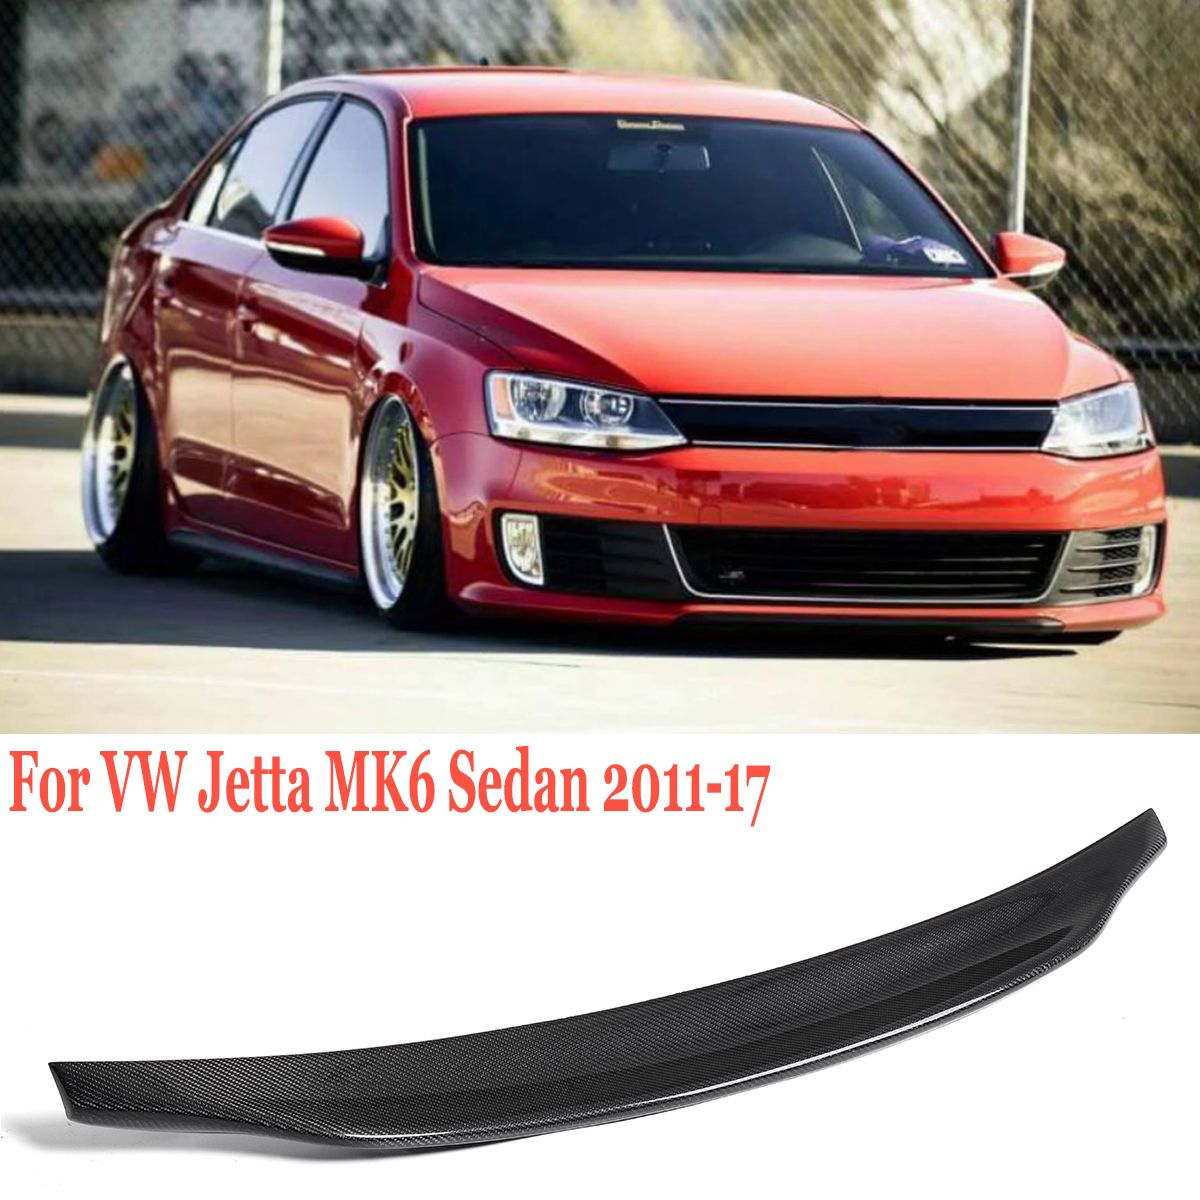 Real-Carbon-Fiber-Rear-Trunk-Spoiler-Lip-For-VW-Jetta-MK6-Sedan-2011-2017-1708907